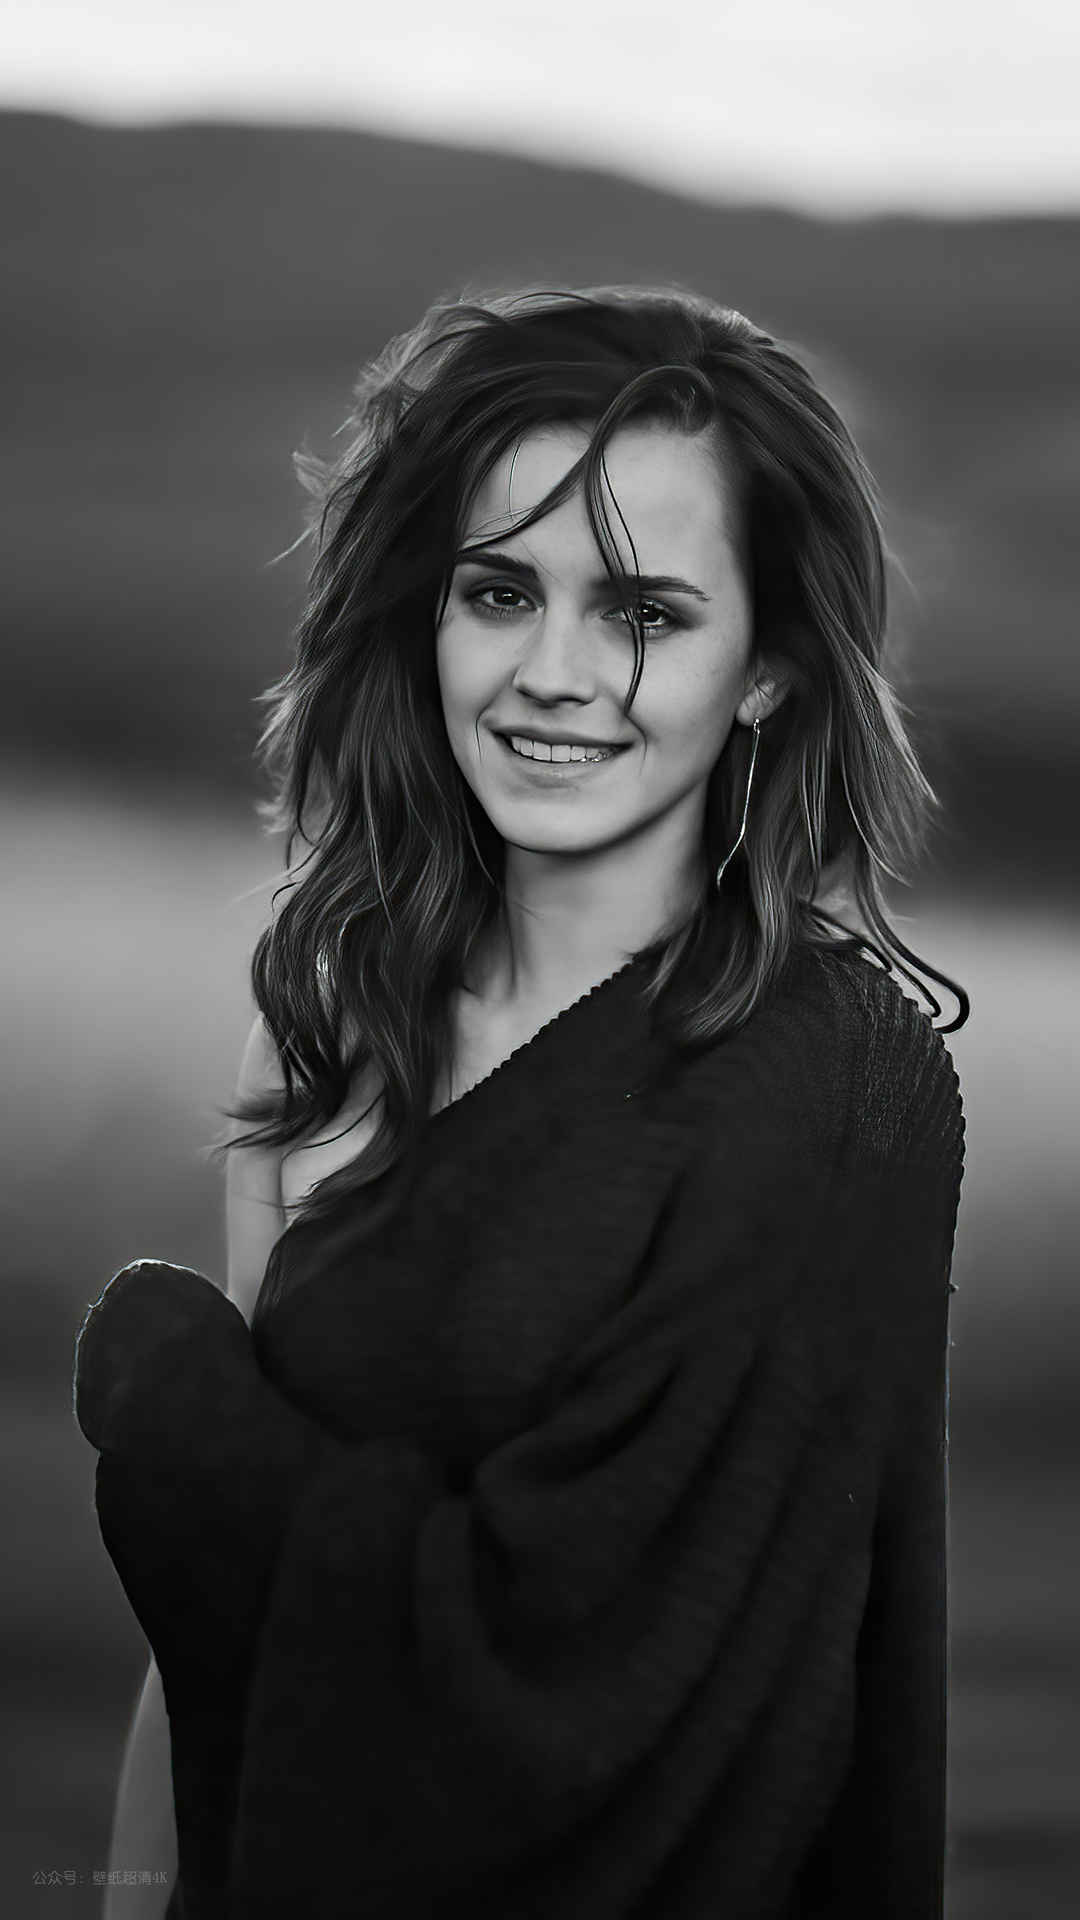 艾玛·沃特森(Emma Watson) 黑白写真手机壁纸-